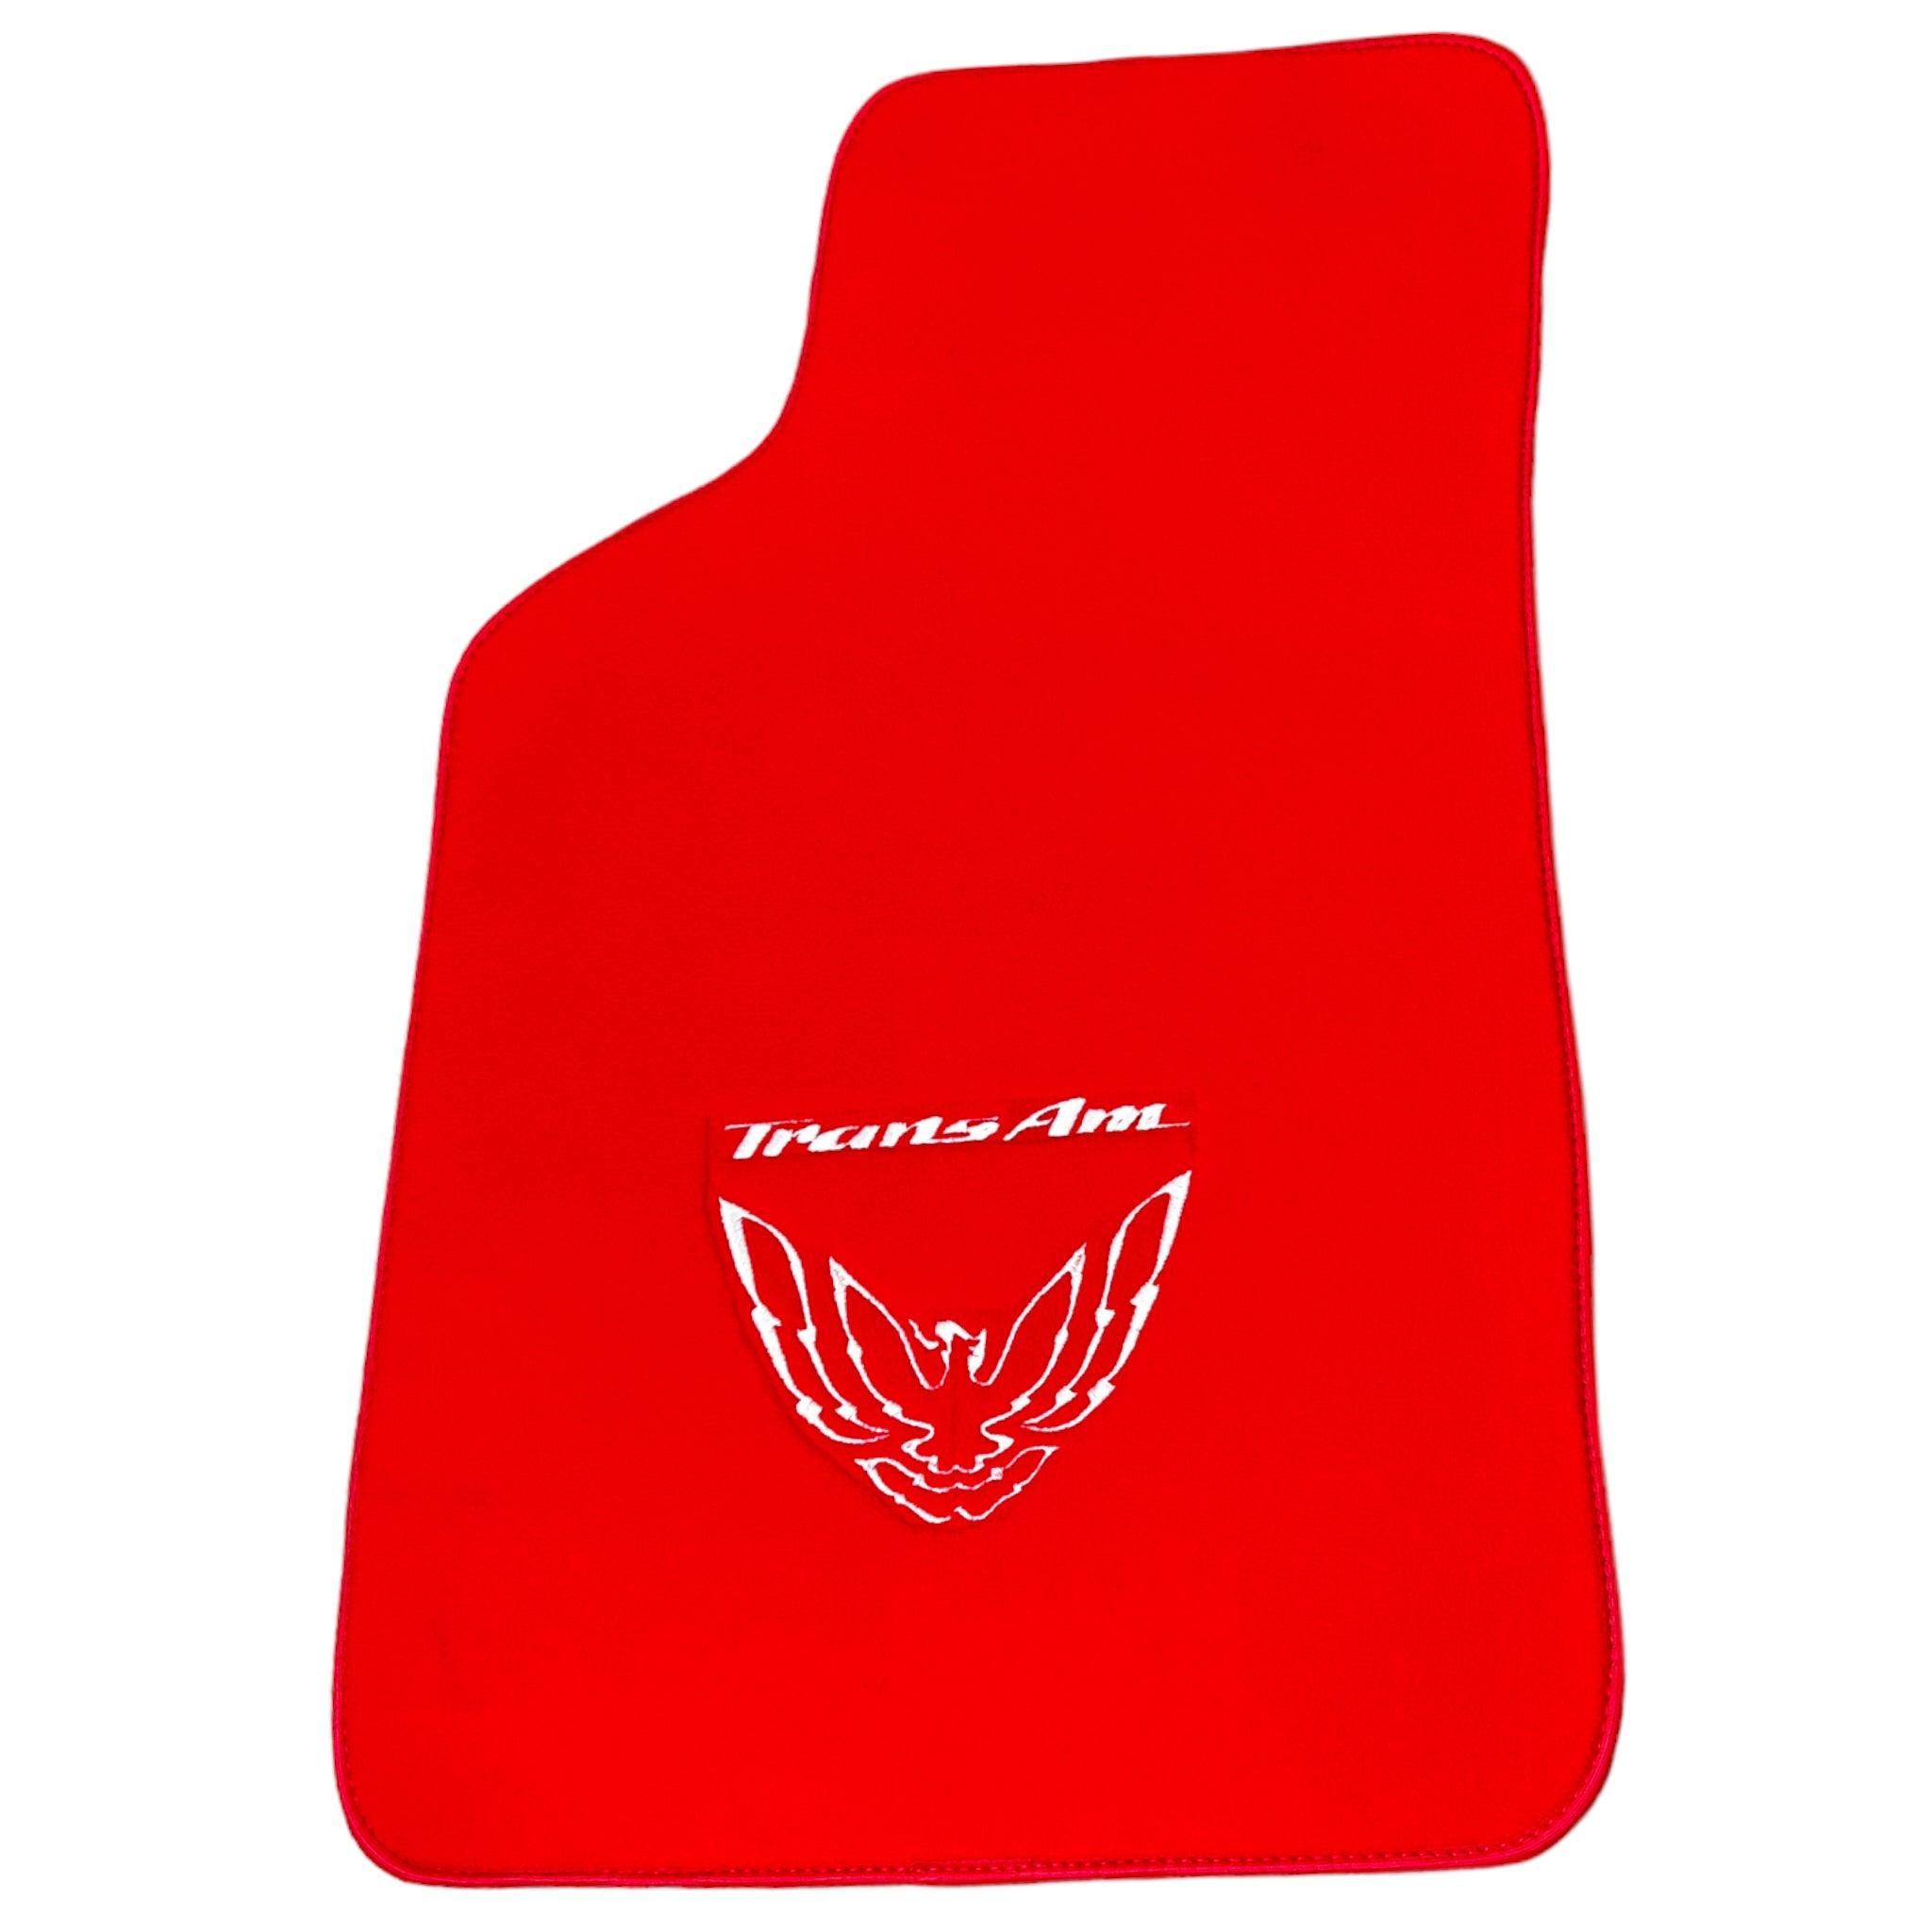 Red Floor Mats for Pontiac FireBird (1970-1981) with Trans Am Logo